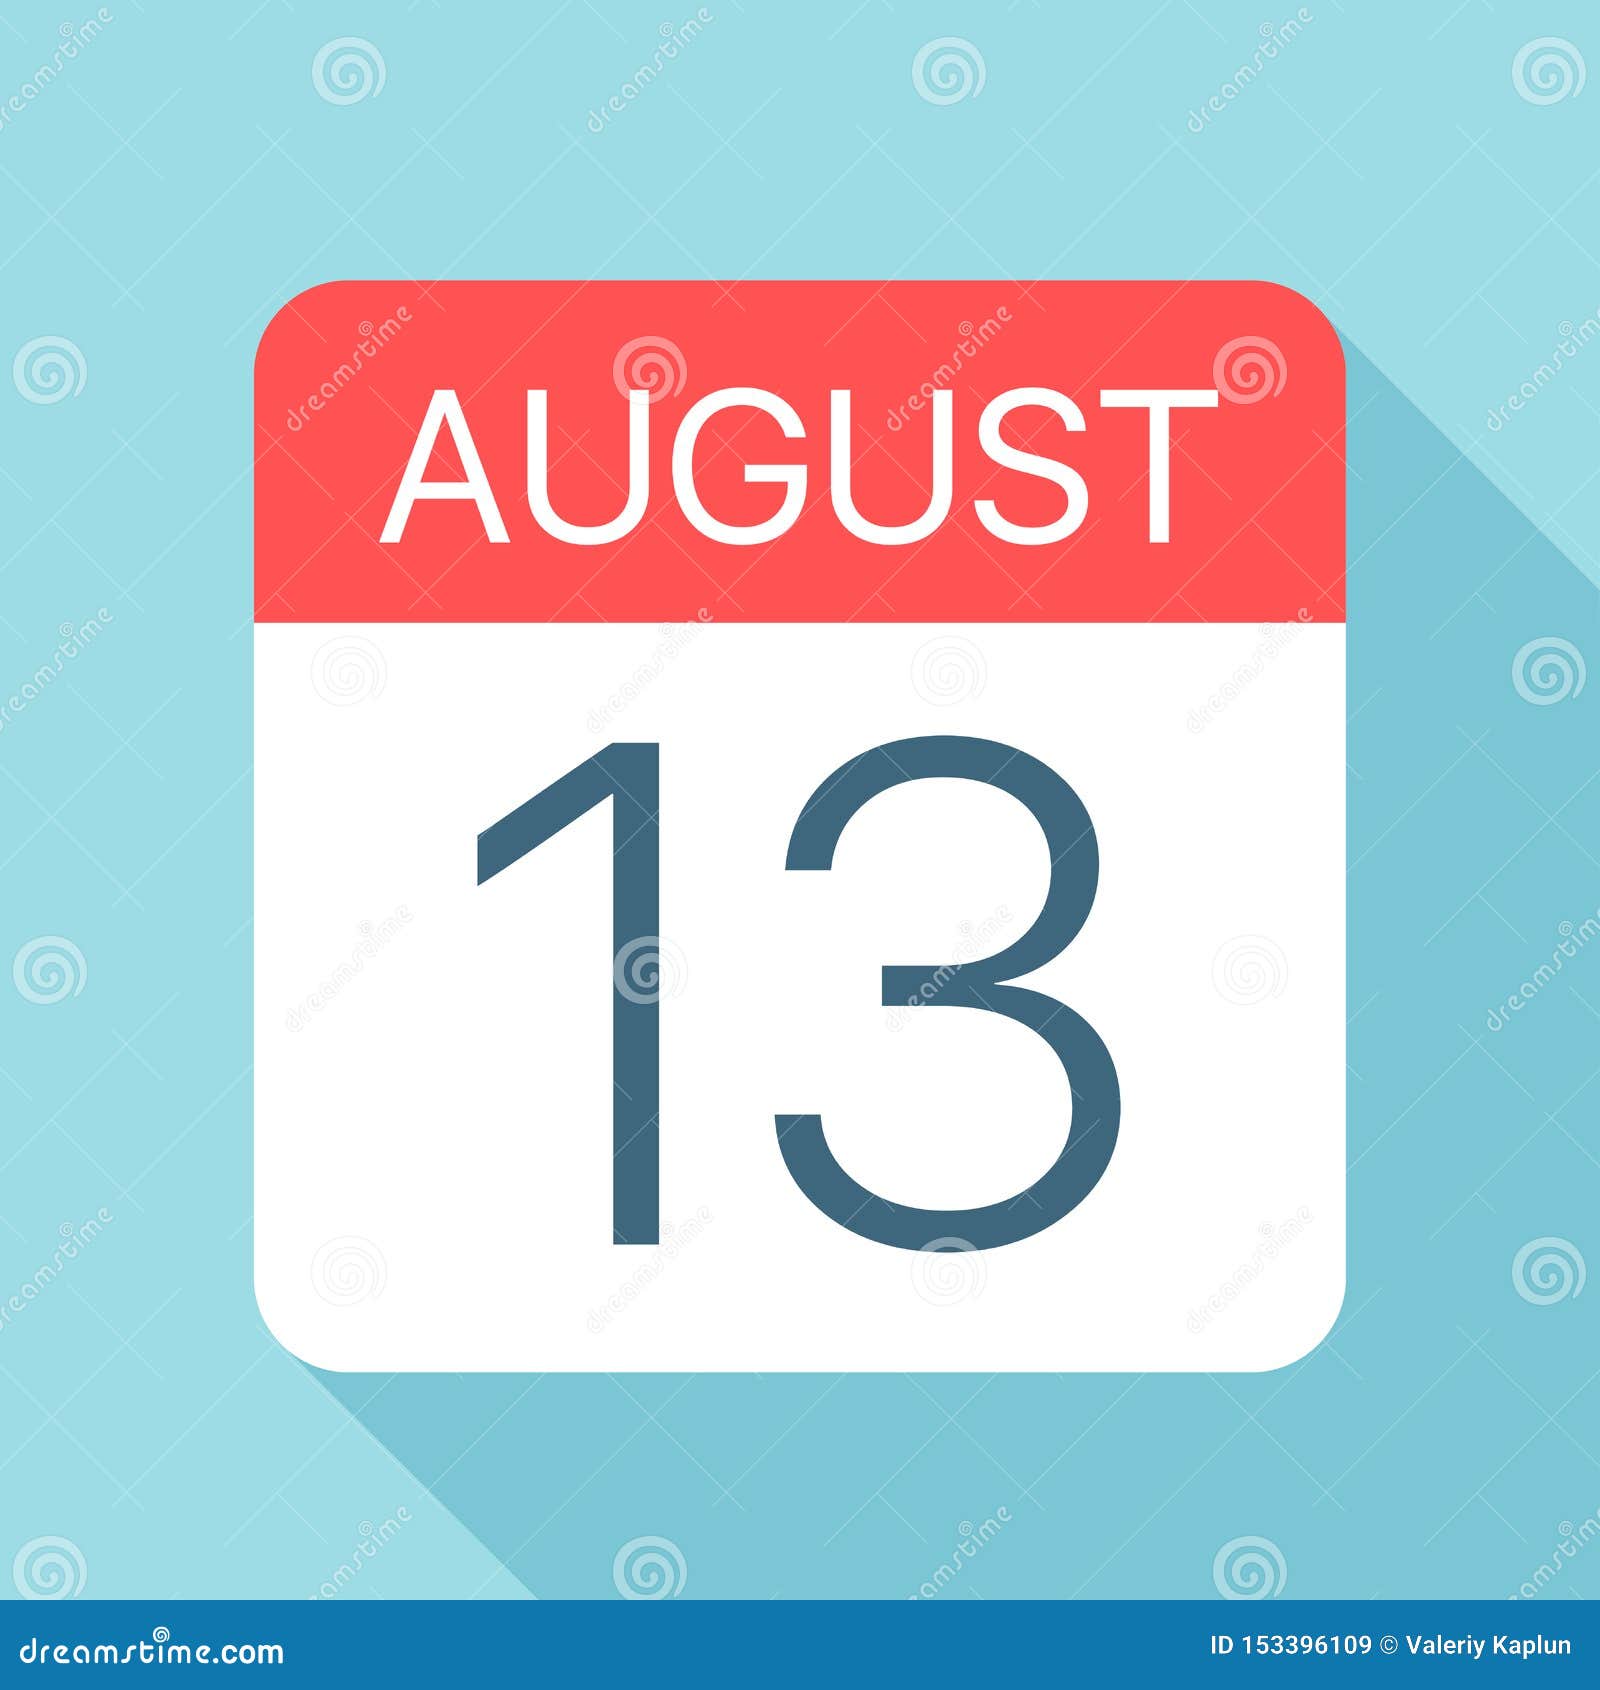 Le 13 août est-il propice à la date de bon augure?